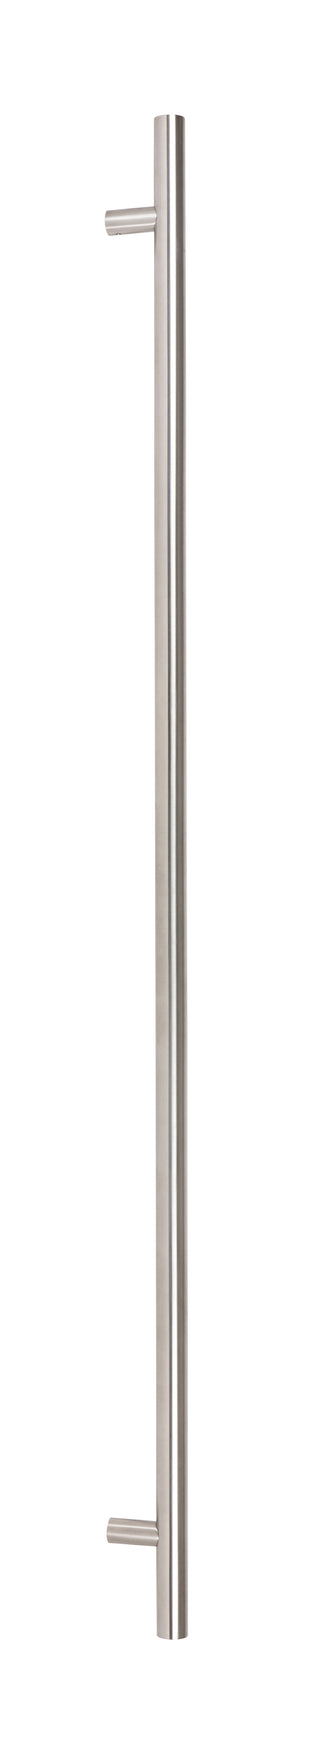 Satin SS (316) 1.5m T Bar Handle Bolt Fix 32mm Ø